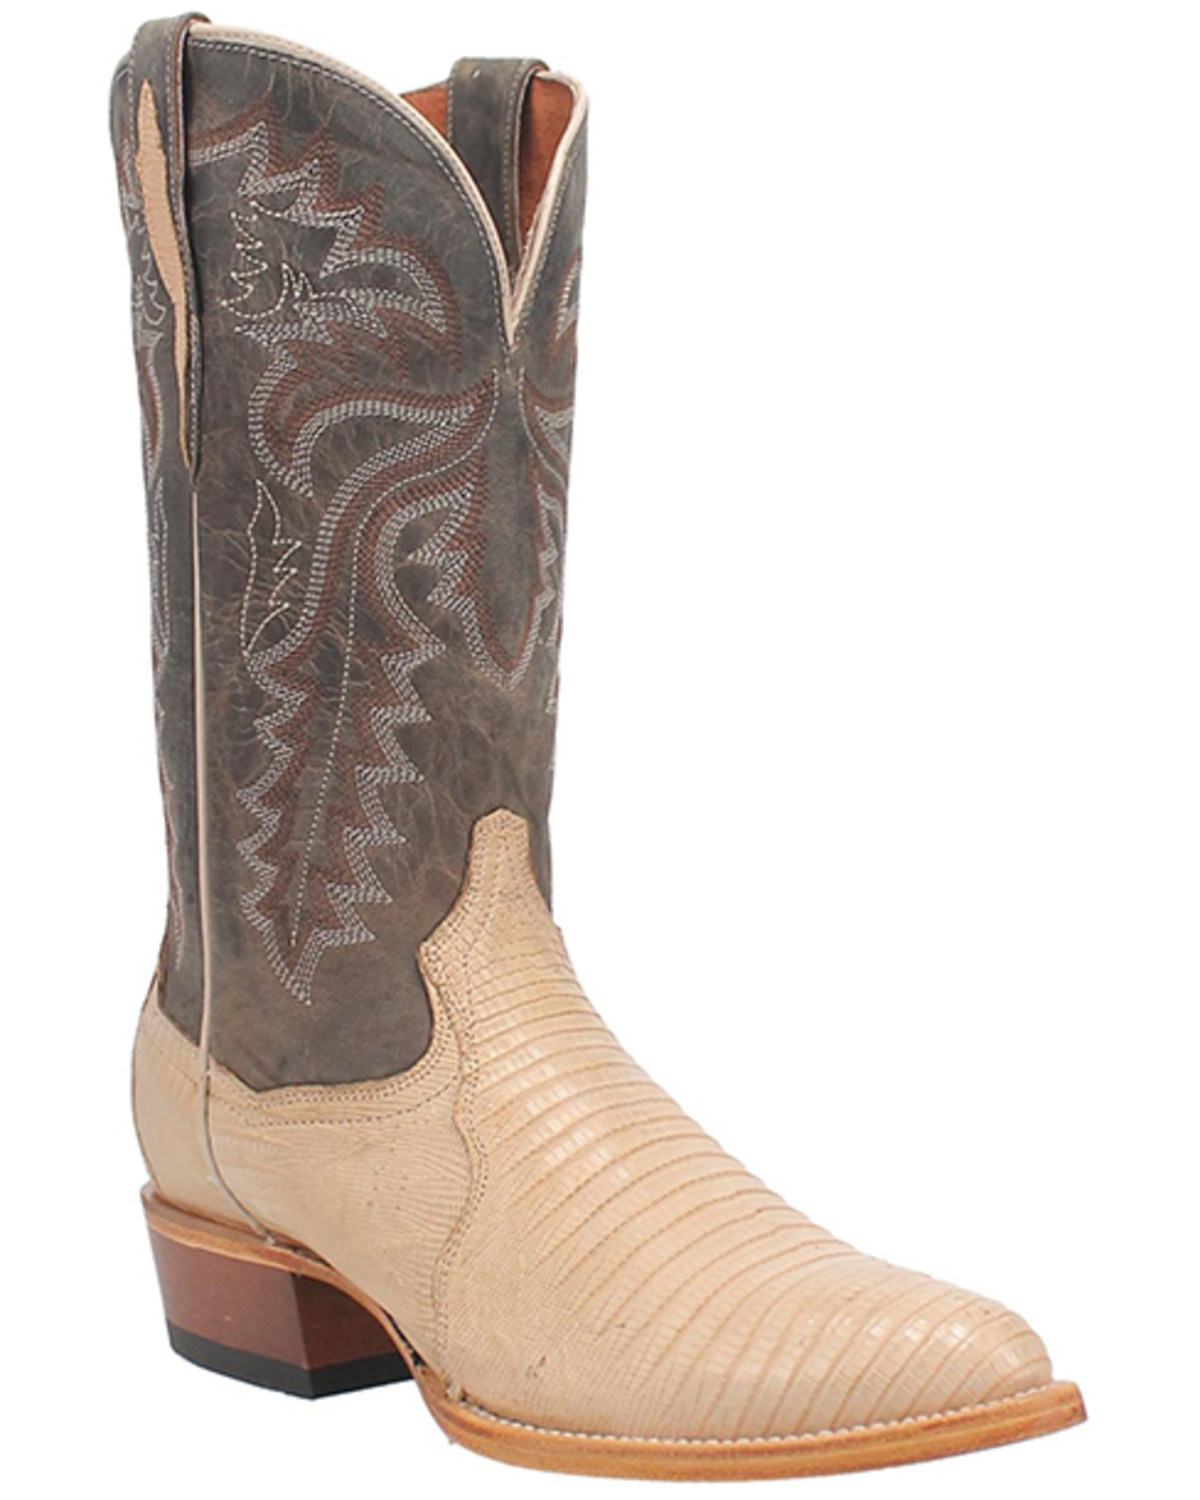 Dan Post Men's Exotic Lizard Western Boots - Medium Toe